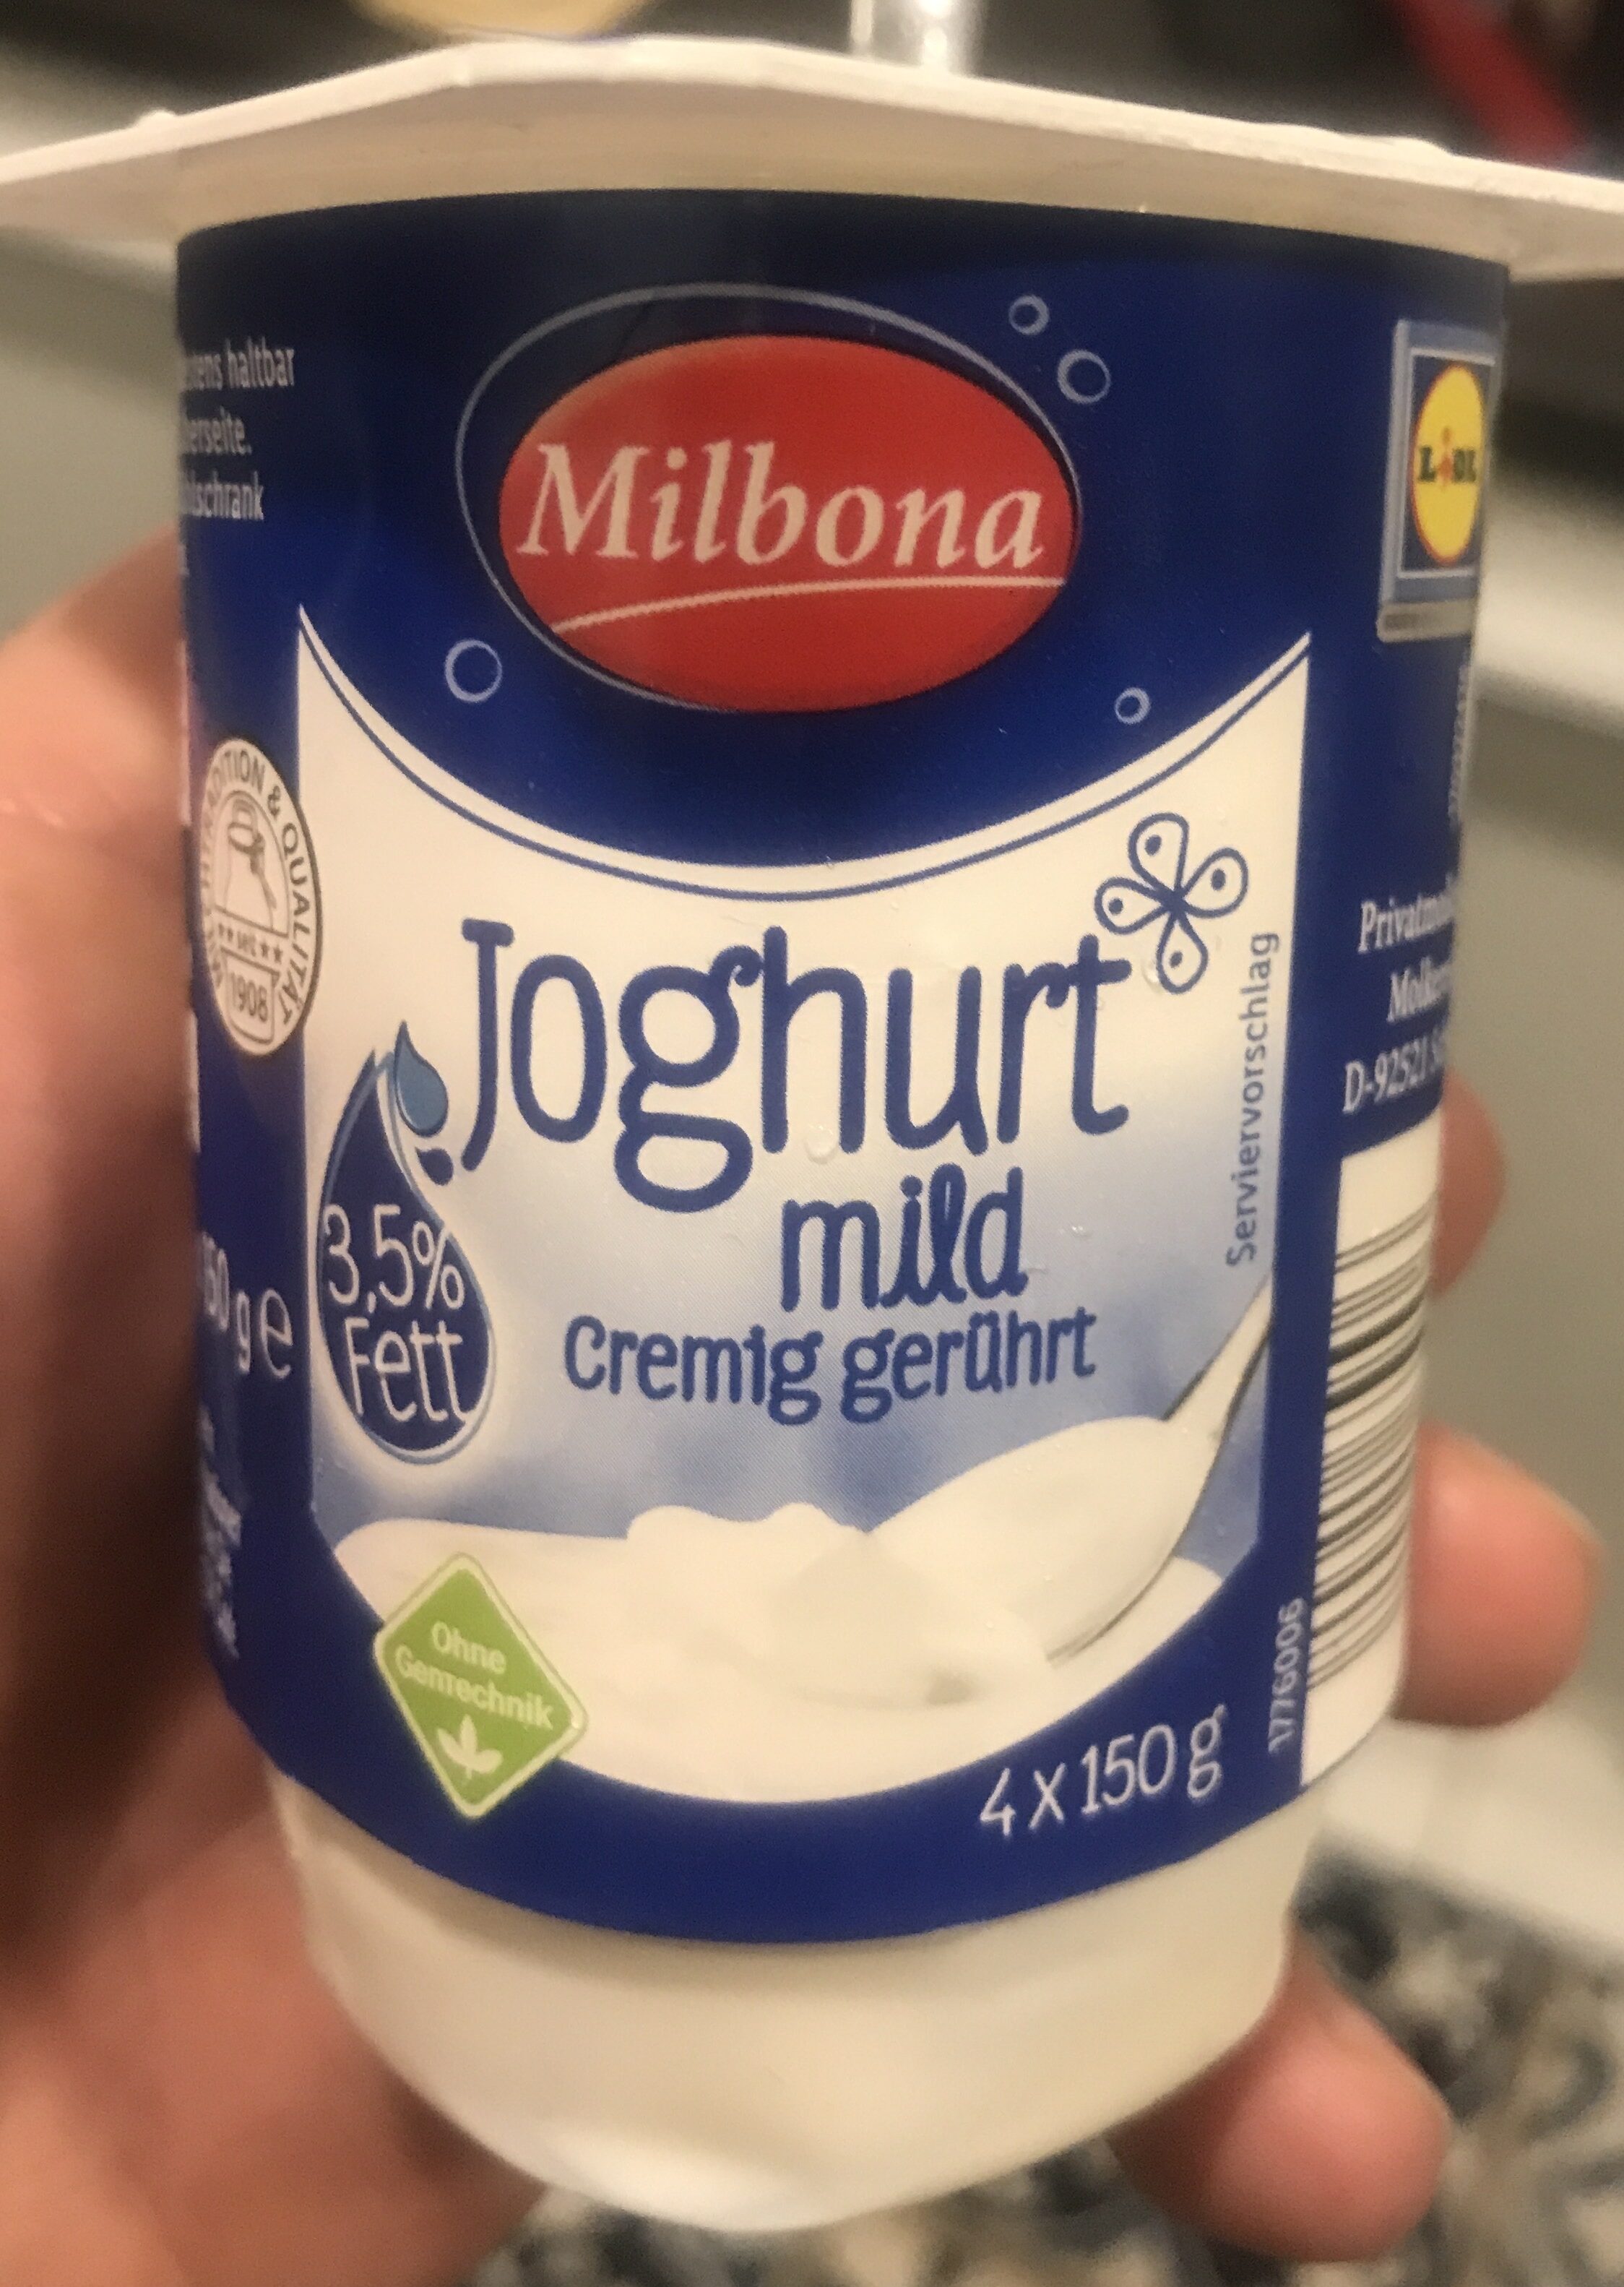 Joghurt mild - Produkt - de